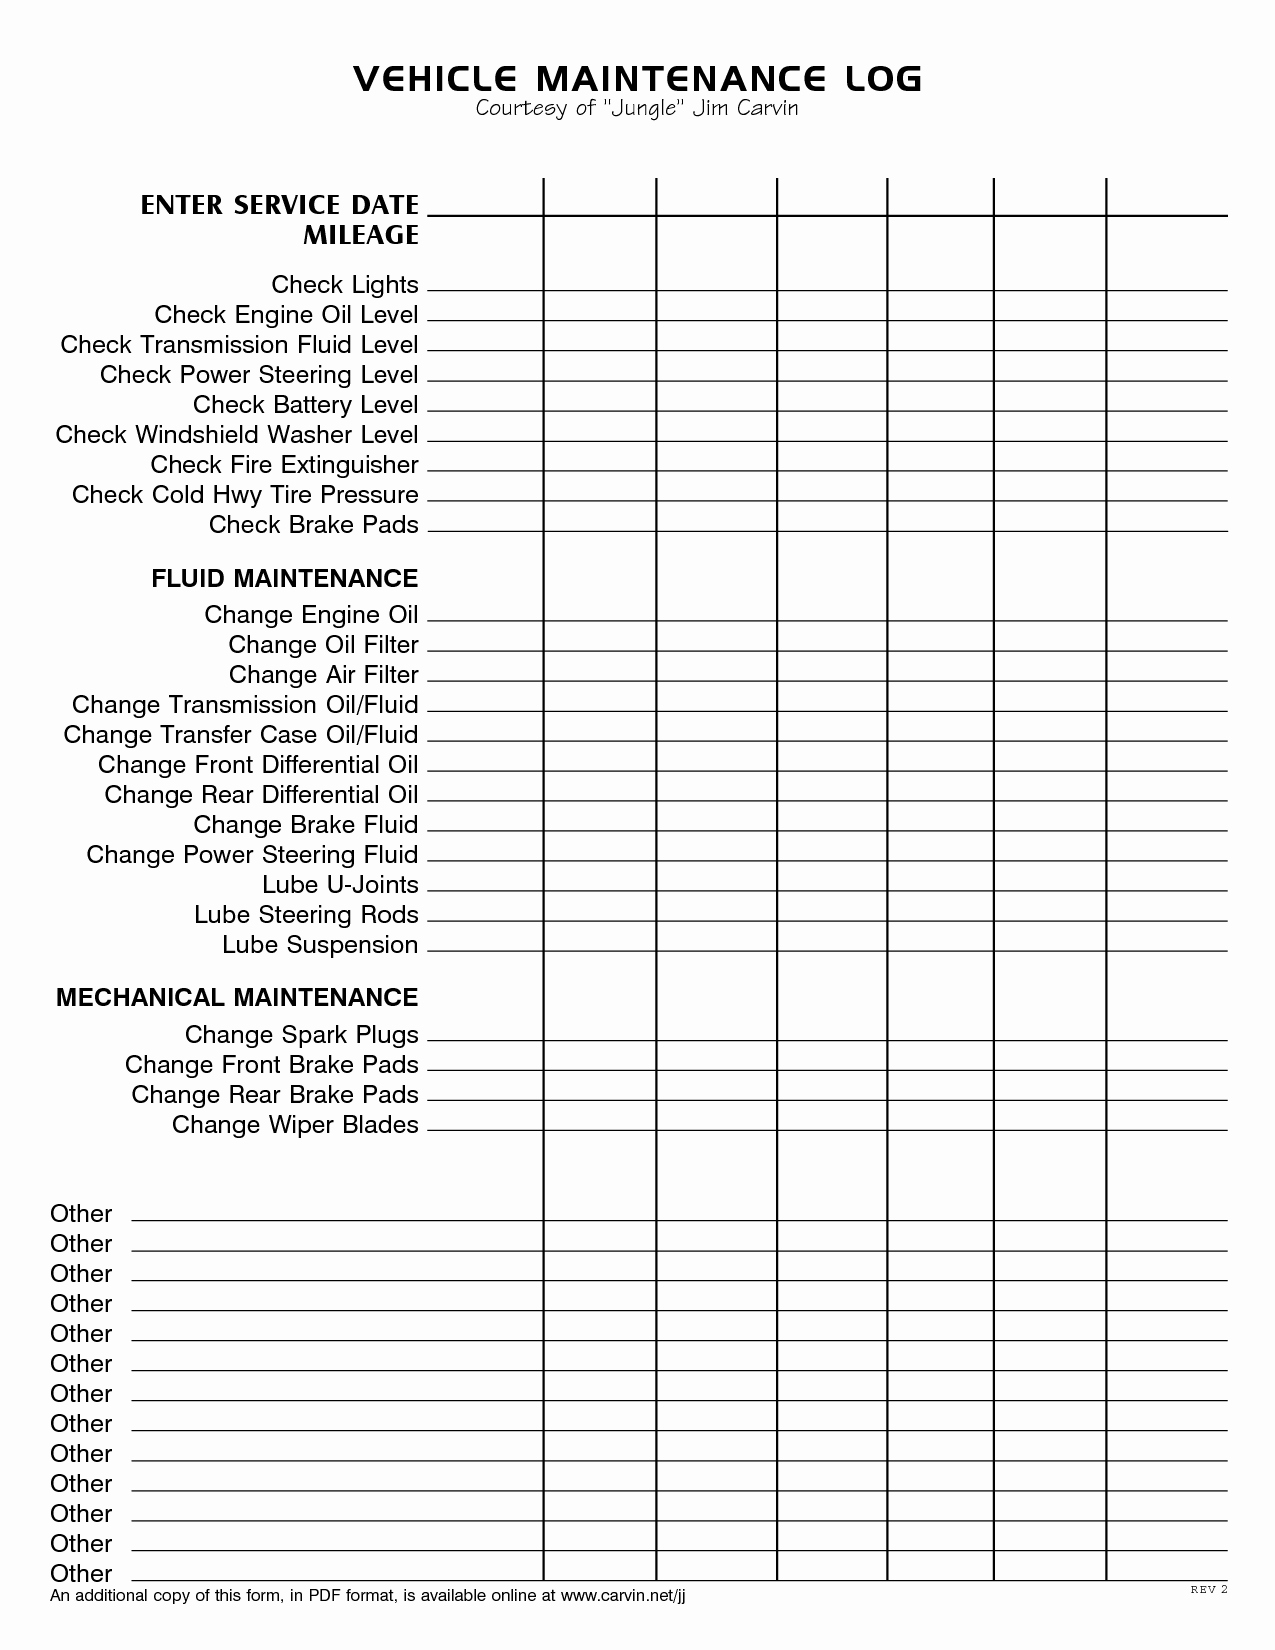 Annual Car Maintenance Checklist